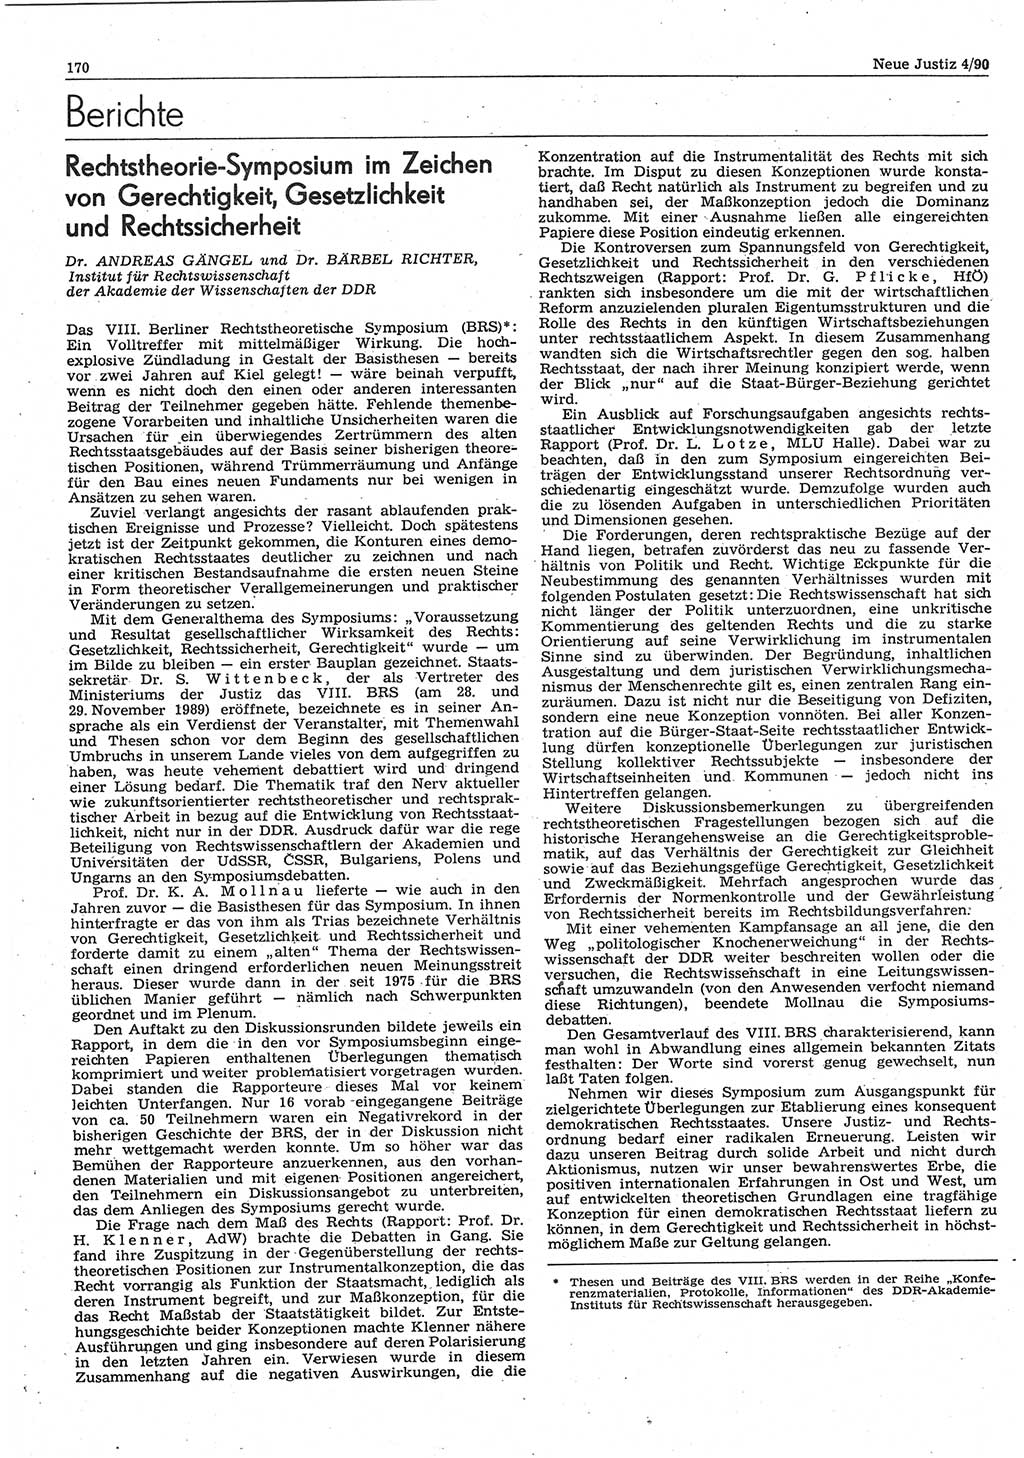 Neue Justiz (NJ), Zeitschrift für Rechtsetzung und Rechtsanwendung [Deutsche Demokratische Republik (DDR)], 44. Jahrgang 1990, Seite 170 (NJ DDR 1990, S. 170)